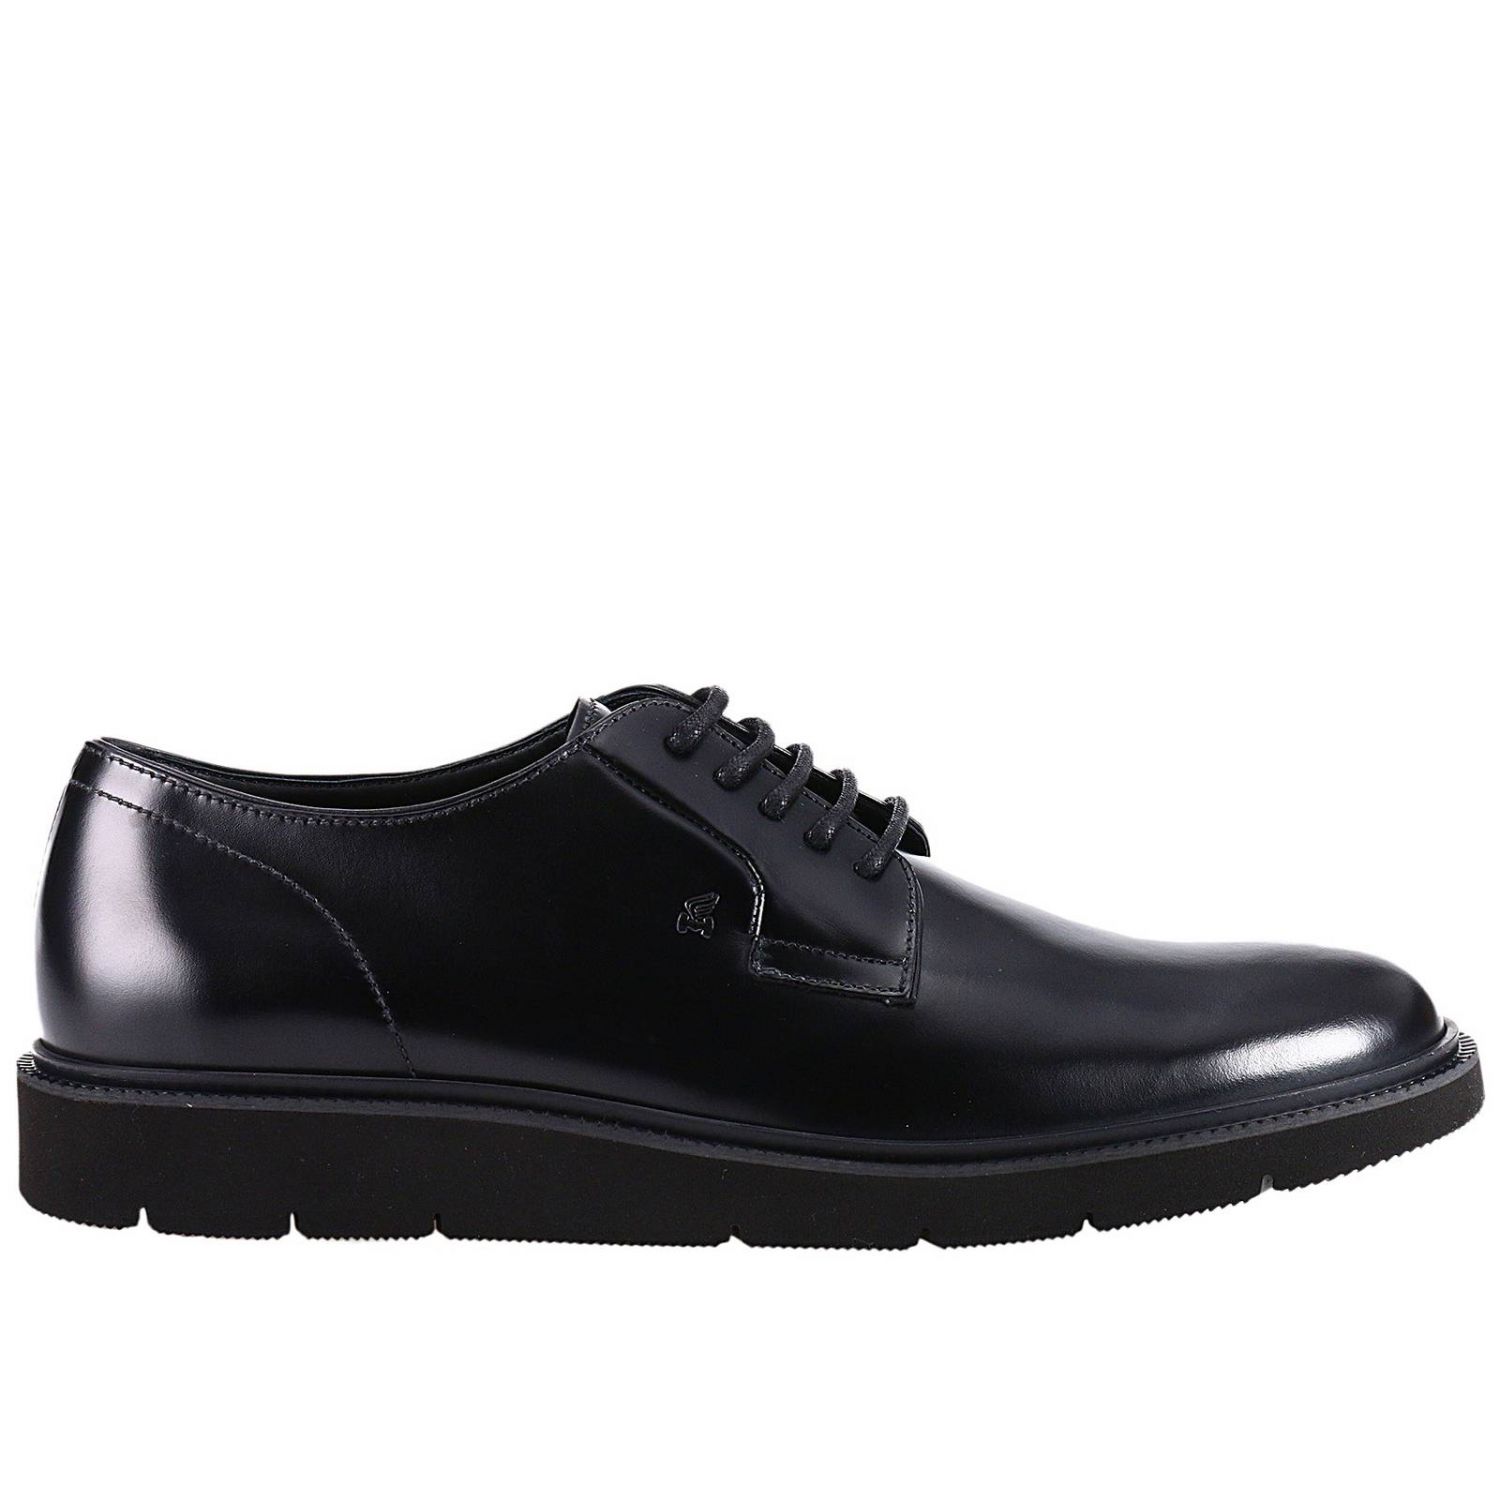 Hogan Outlet: Shoes men | Brogue Shoes Hogan Men Black | Brogue Shoes ...